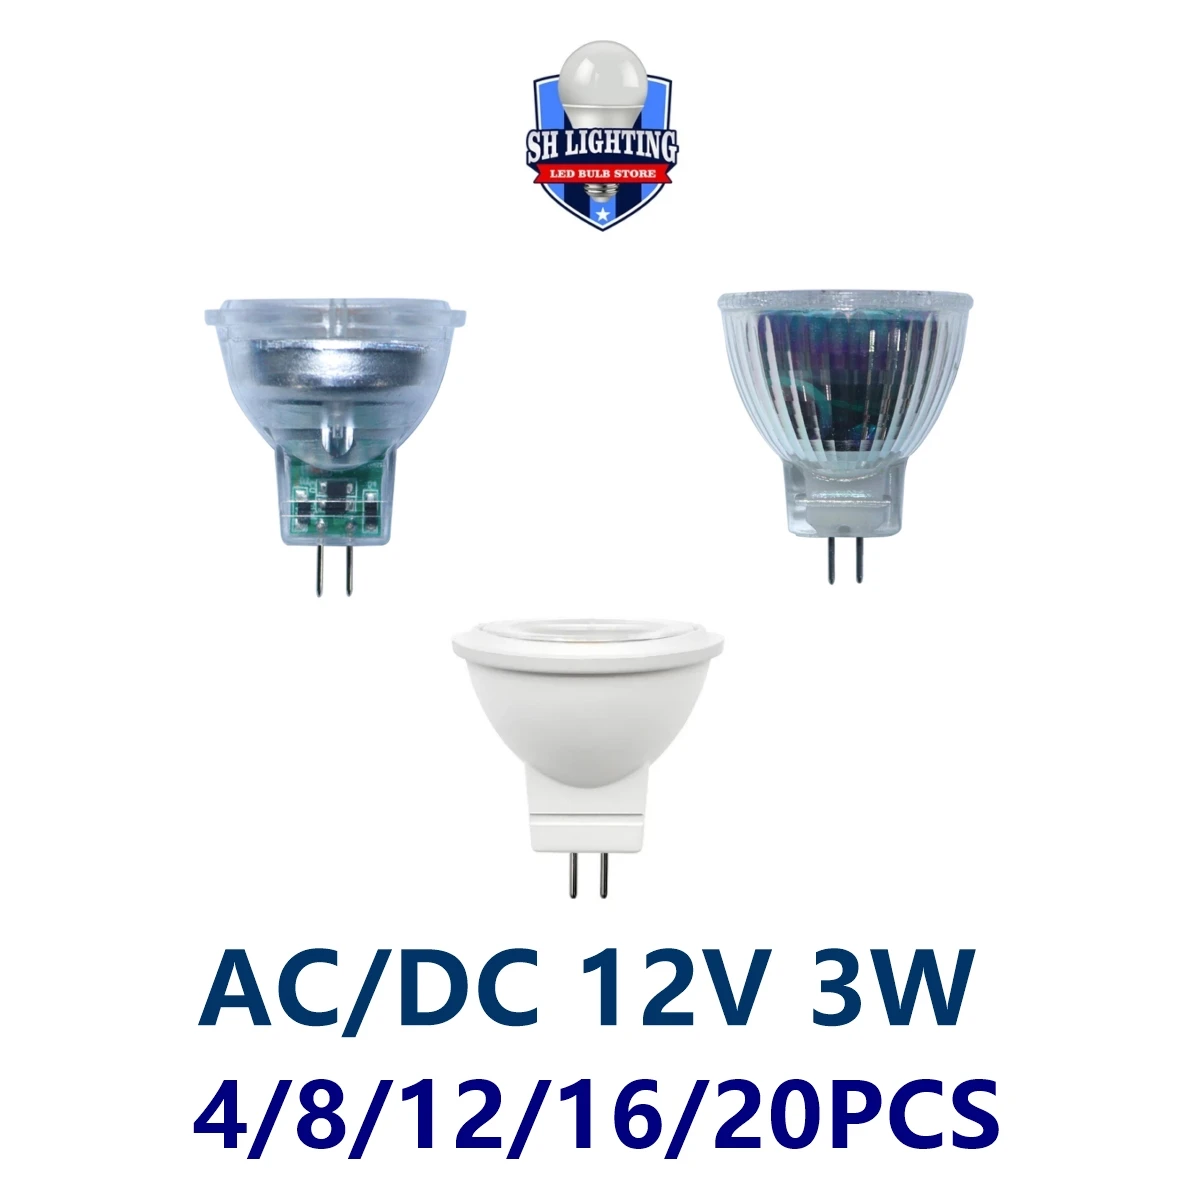 4-20PCS LED Mini spotlight MR11 contact pin GU4.0 AC/DC 12V 3W 3000K/4000K/6000K super light suitable for kitchen and study